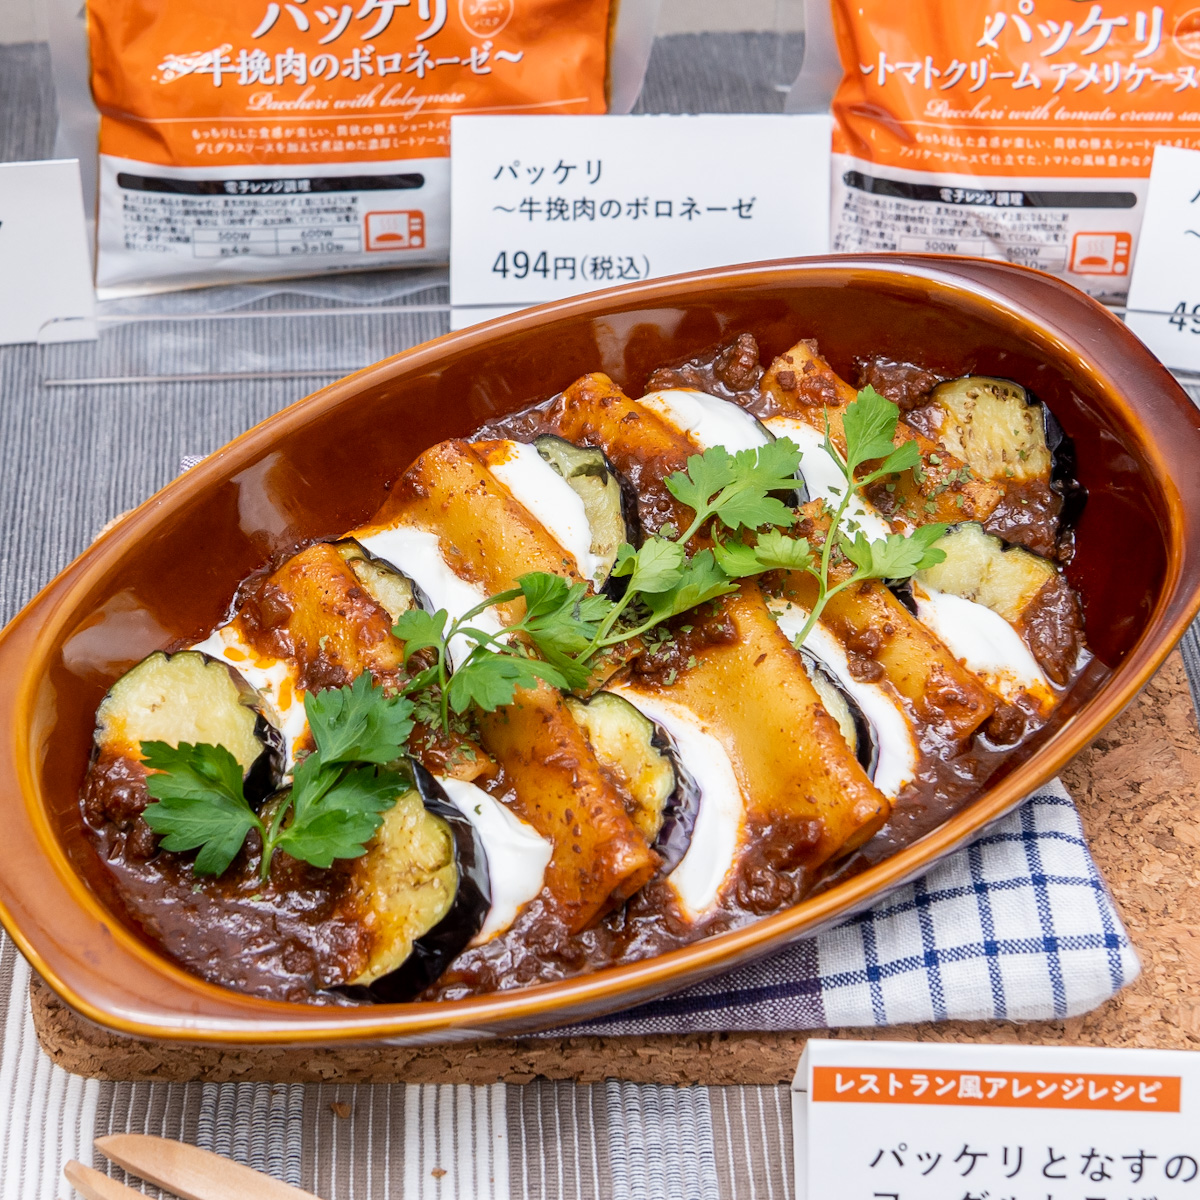 冷凍食品ブランド「Denny’s Table(デニーズテーブル)」パッケリ〜牛挽肉のボロネーゼ〜2